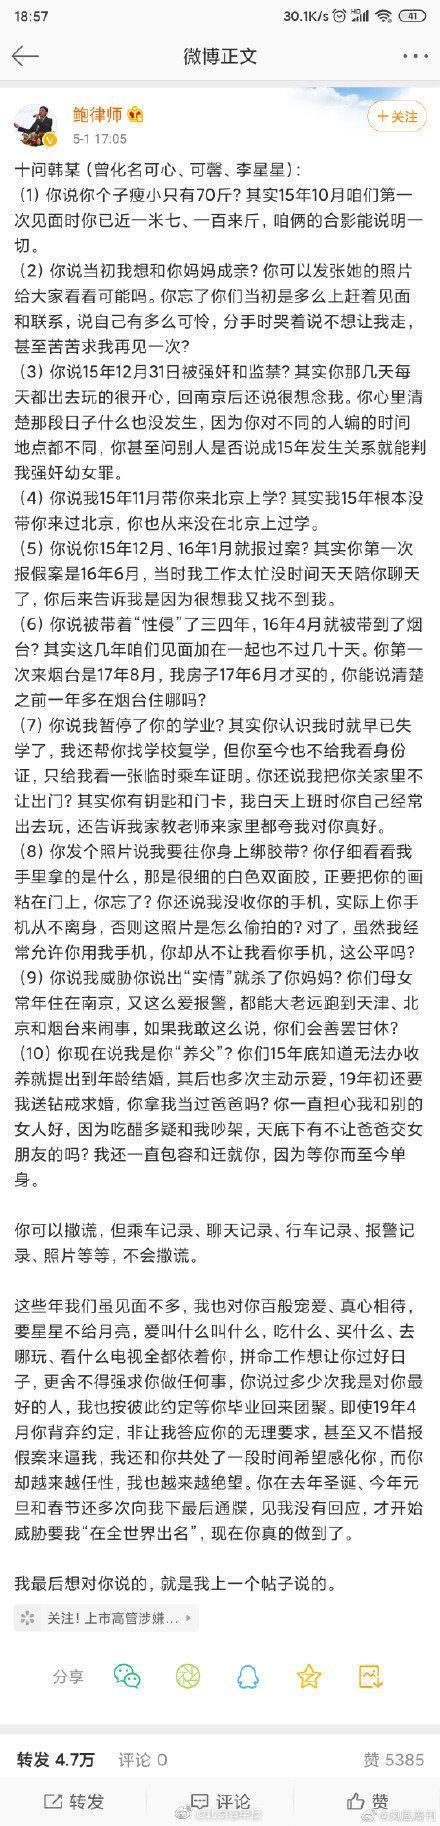 鲍毓明发文十问涉事女孩 性侵养女男主开始反驳